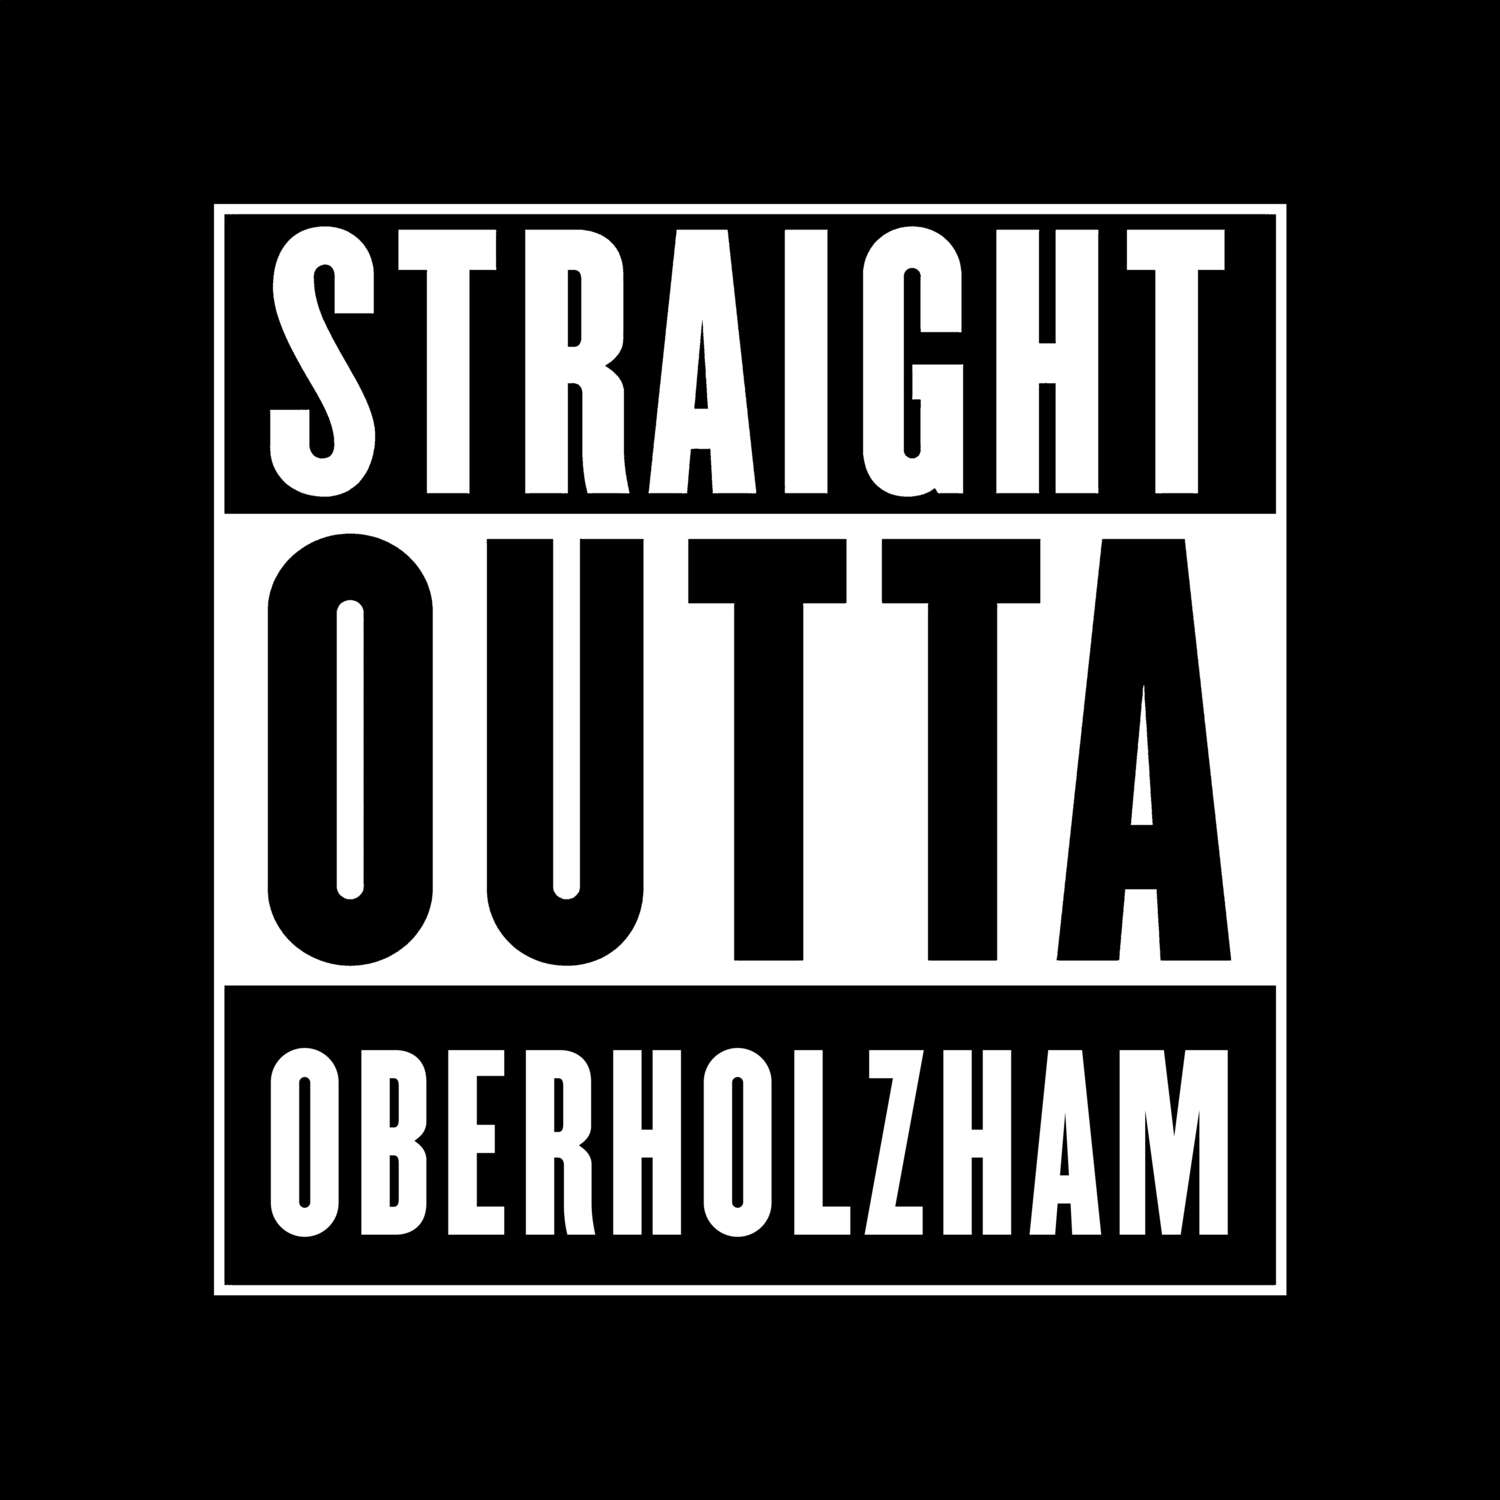 Oberholzham T-Shirt »Straight Outta«